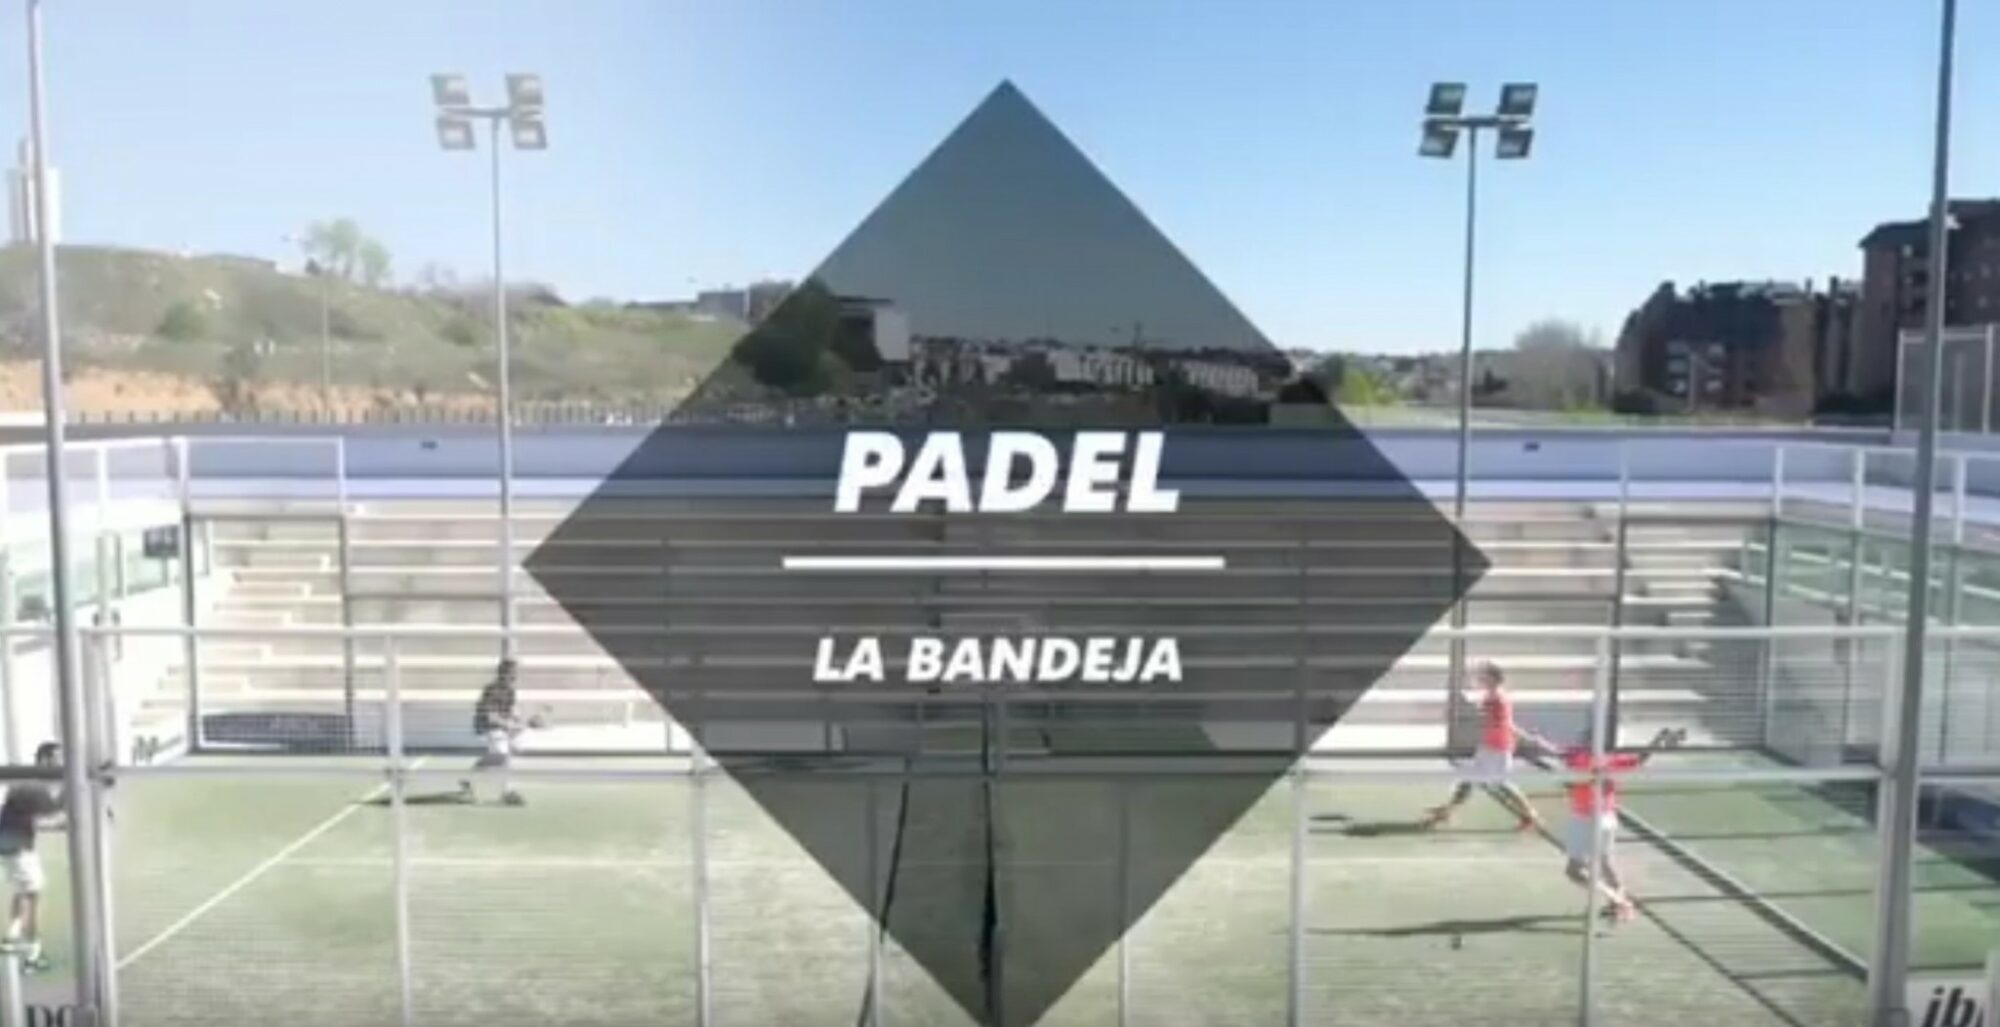 La Bandeja : Tylko jeden strzał padel